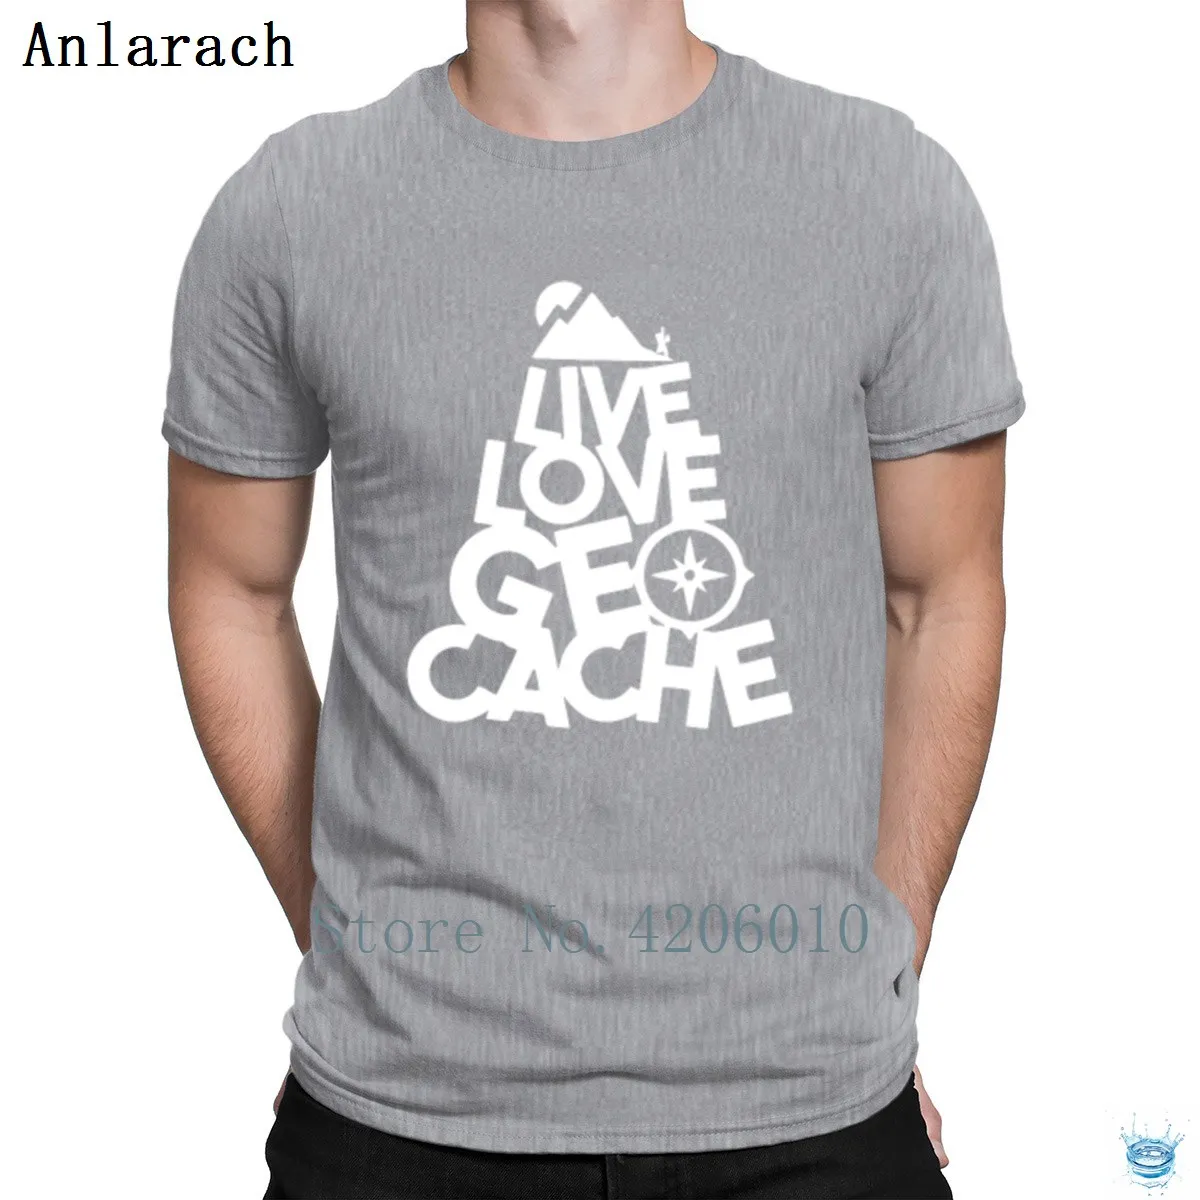 Live Love Geocache футболка дизайн стильный большой мужская футболка хип-хоп топы тренд Лето анларач